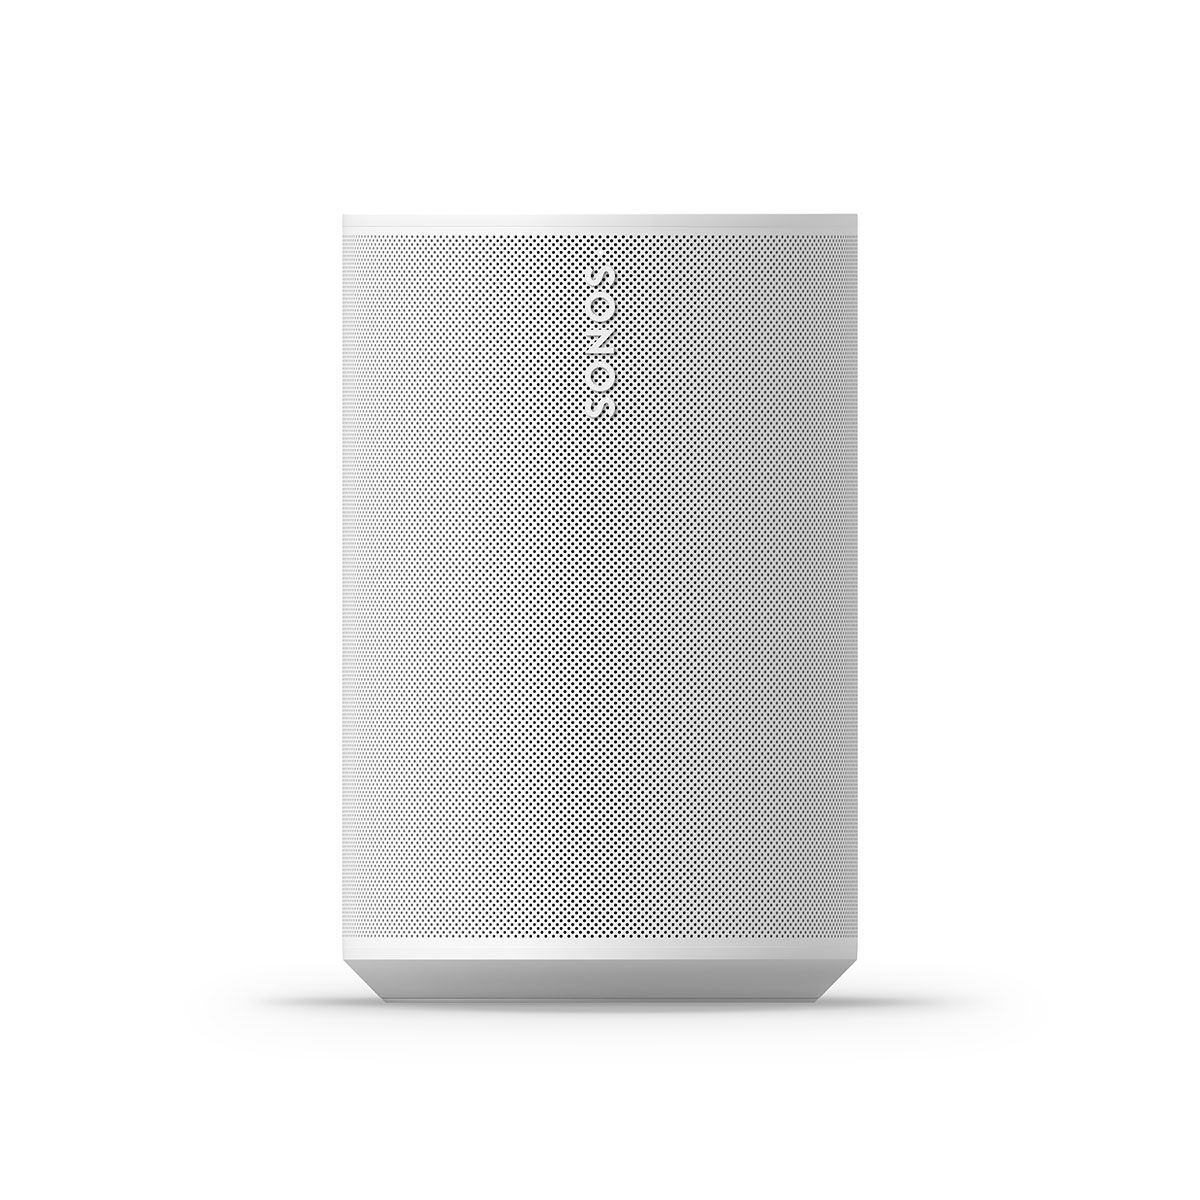 Sonos Era 100 Wireless Speaker - White